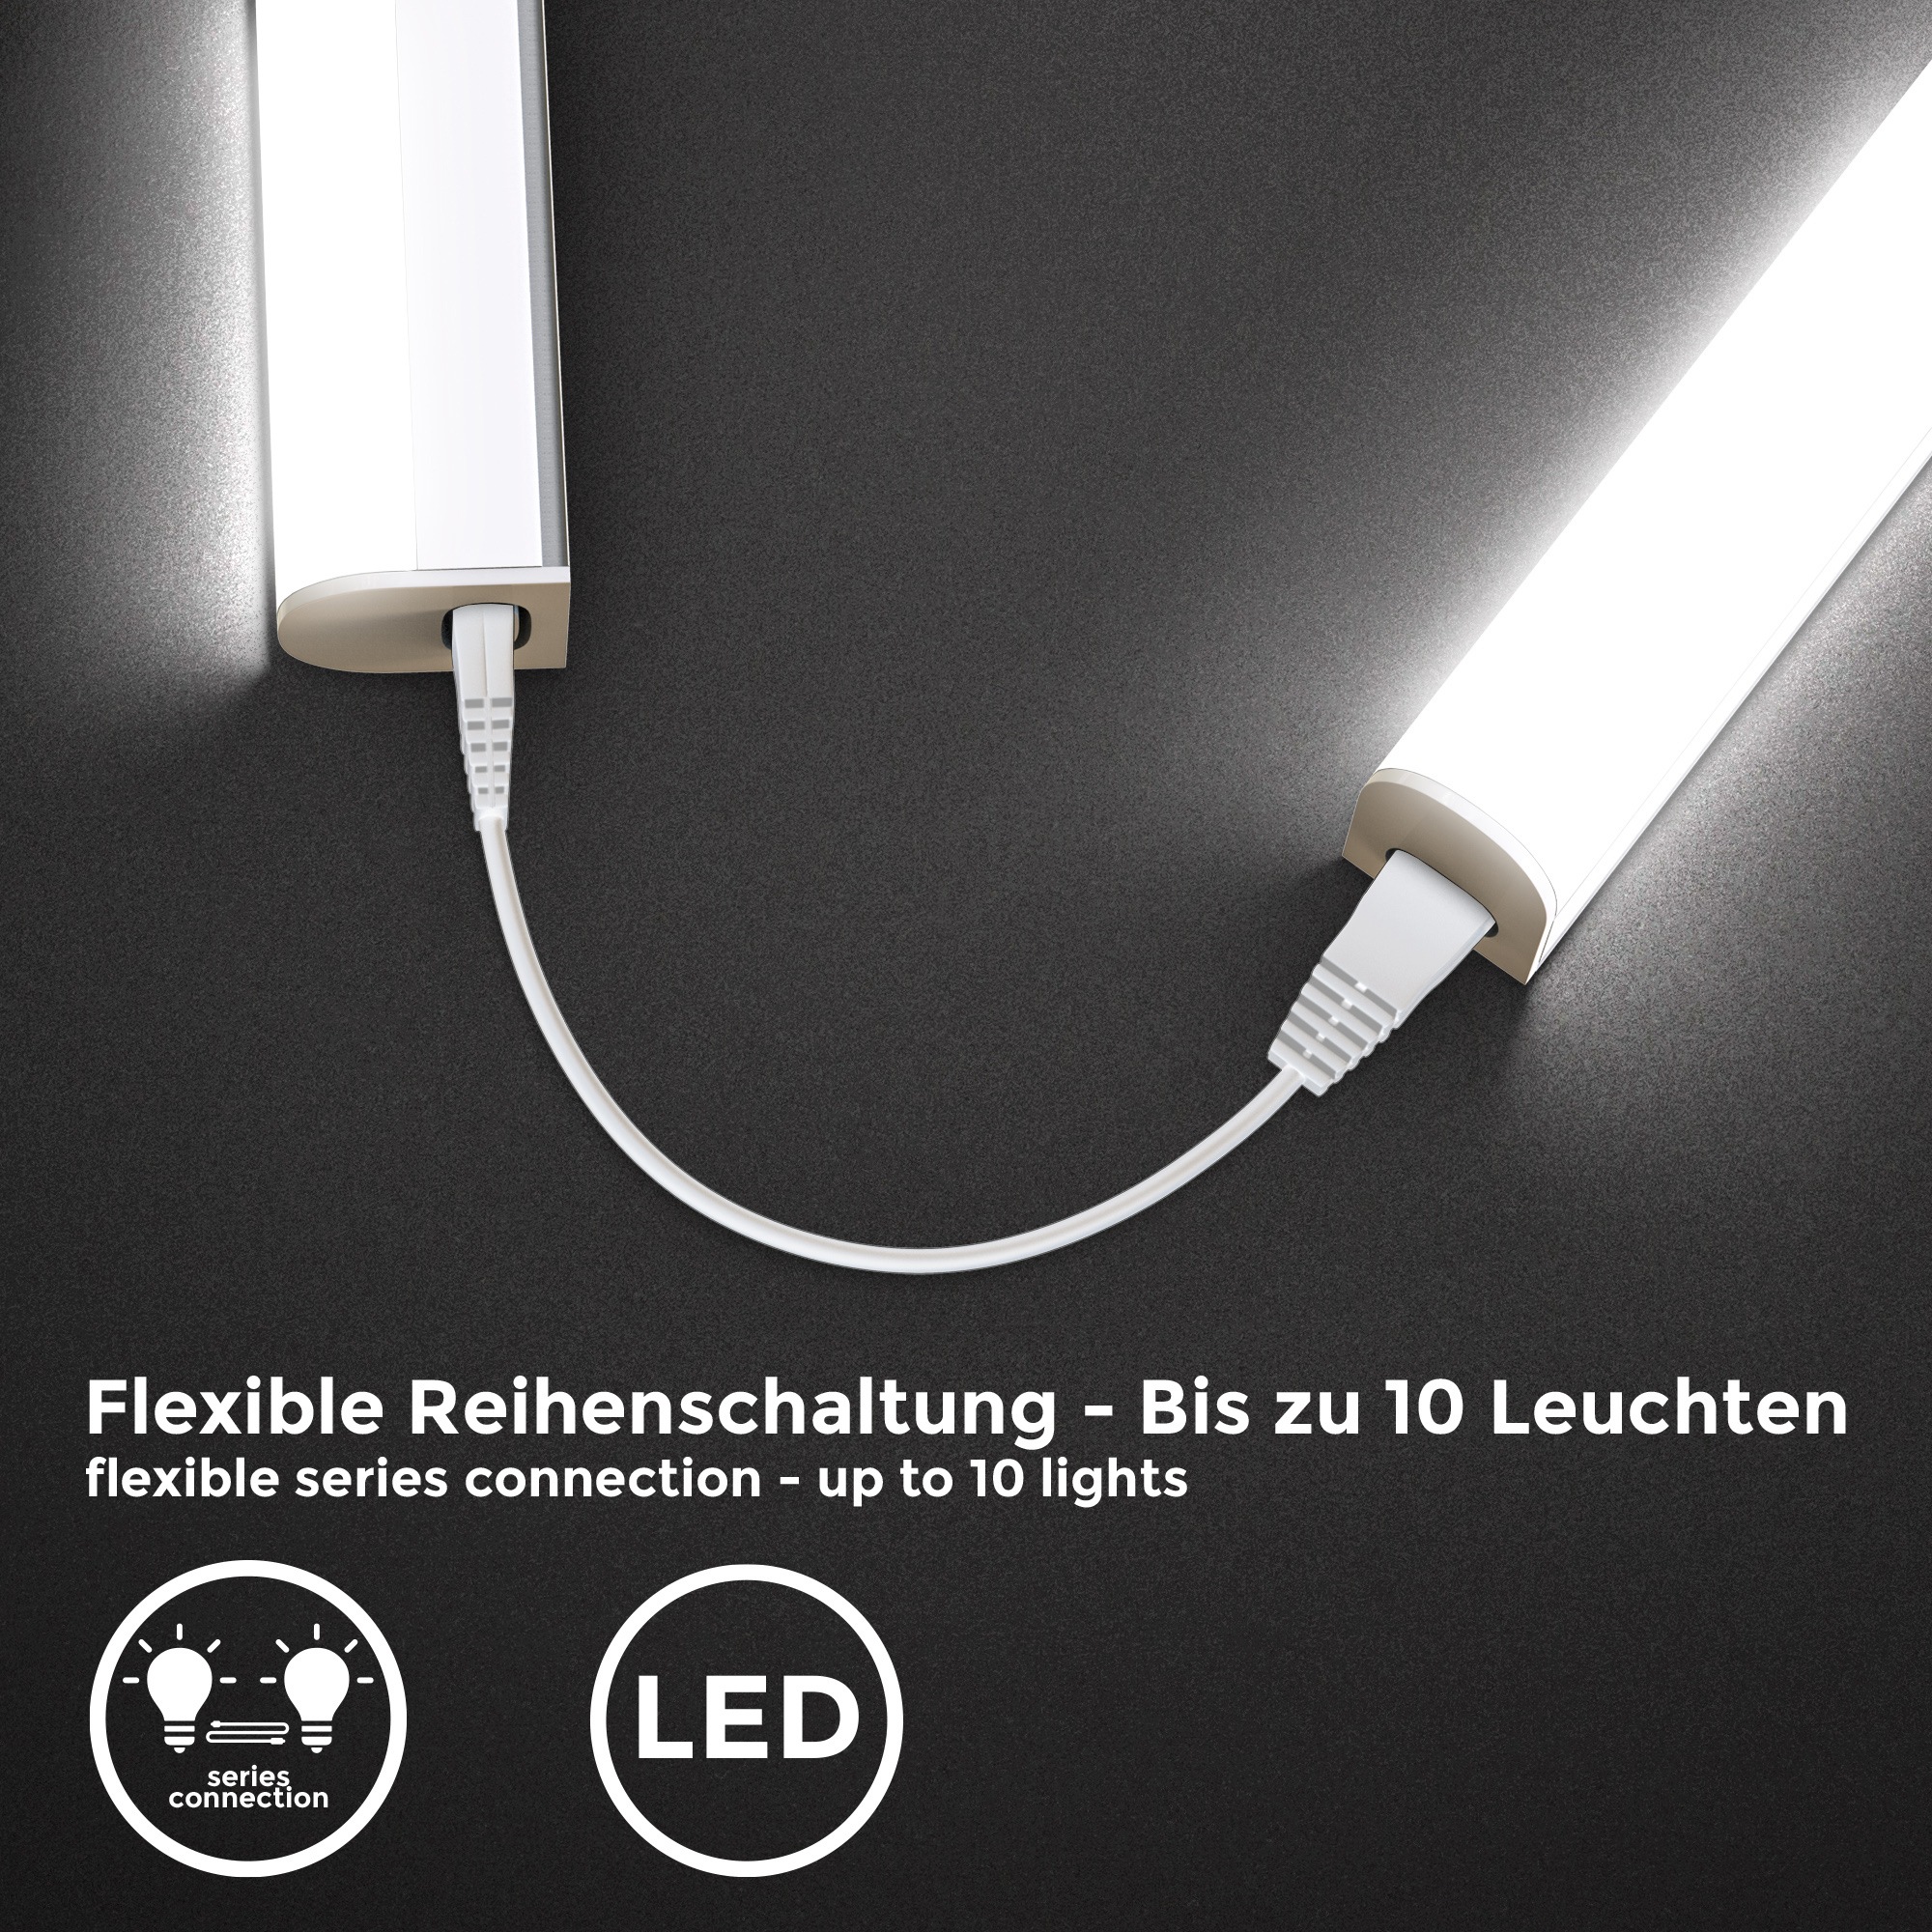 B.K.Licht Unterschrankleuchte inkl. LED-Platine, 2er Set, je 1 x LED-Platine, 8 Watt, 700 Lumen, 4.000 Kelvin, nicht dimmbar,  mit Ein-/Aus-Schalter,  inkl. Zuleitung 1,8m